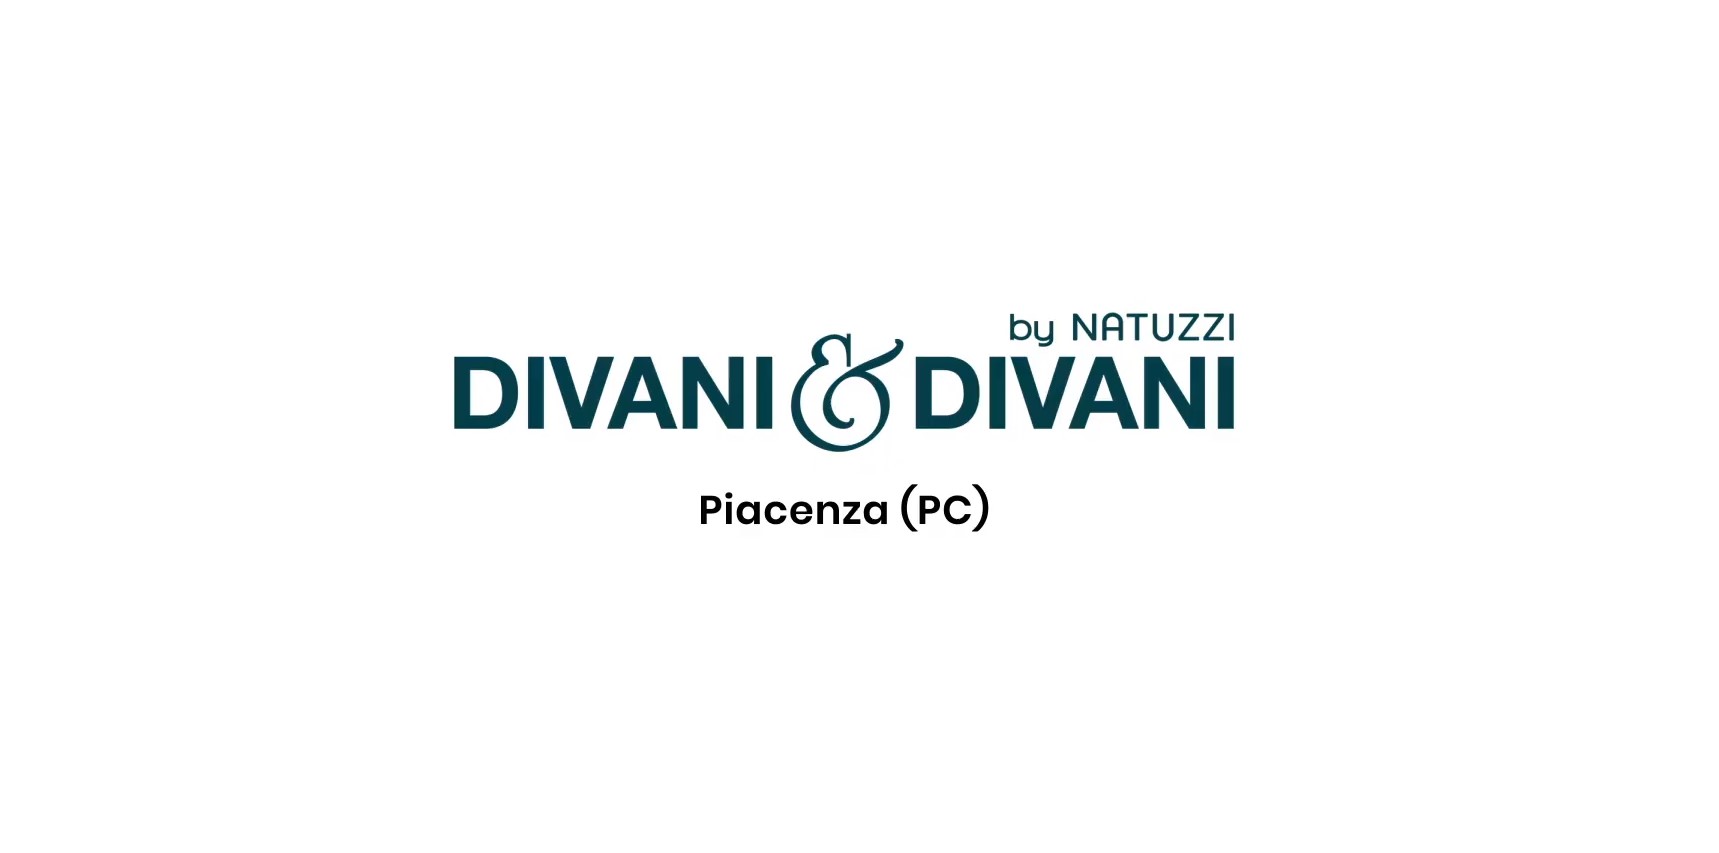 PROMO per social Divani&Divani by Natuzzi con Thais Wiggers